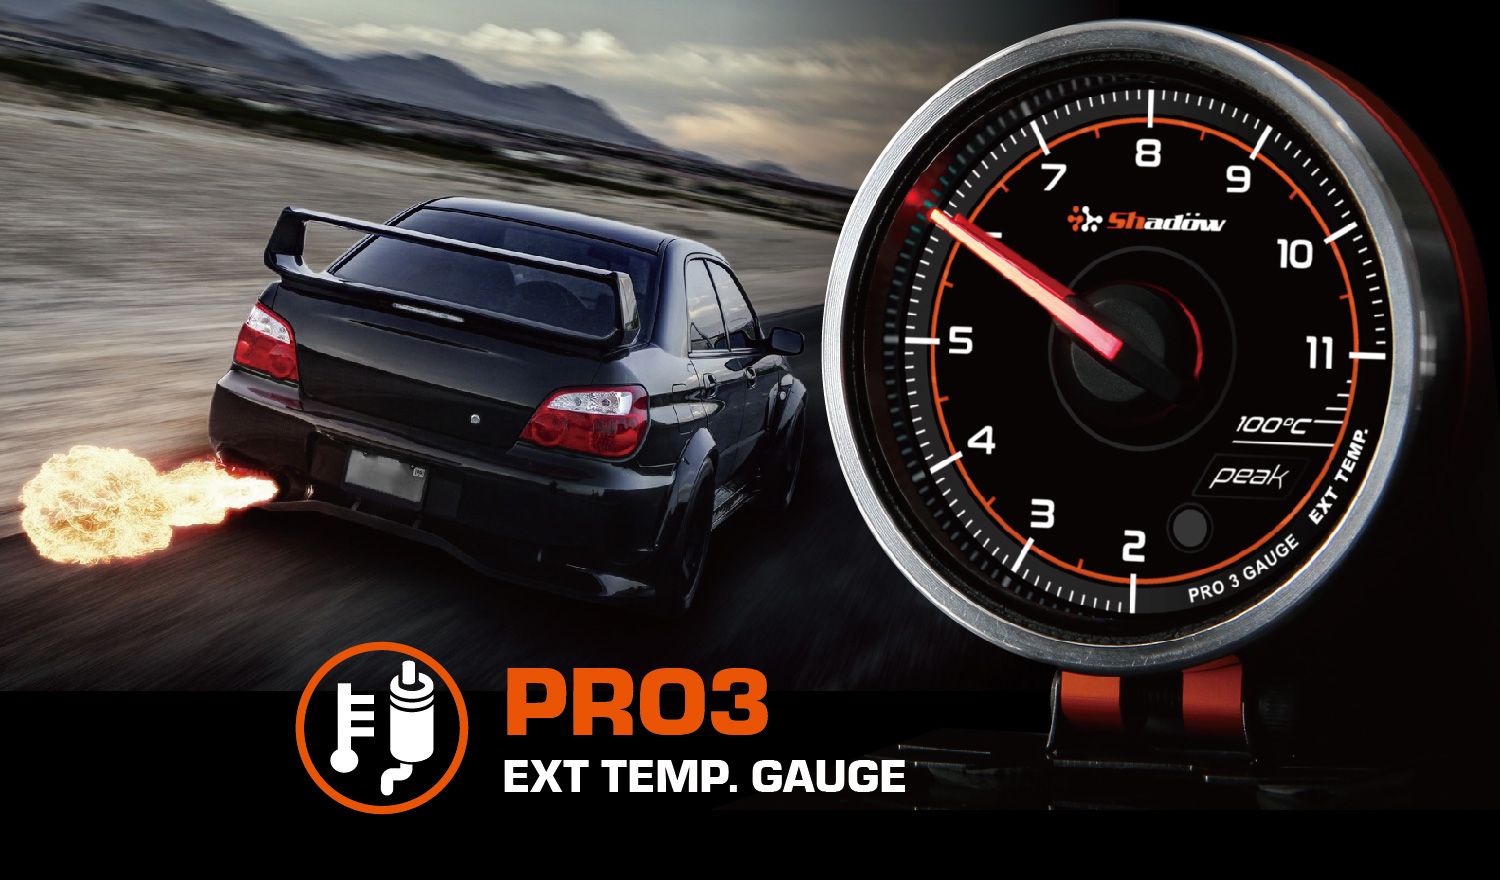 Exhaust Temperature Racing Gauge Measurement Range is from 200°C to 1100°C.